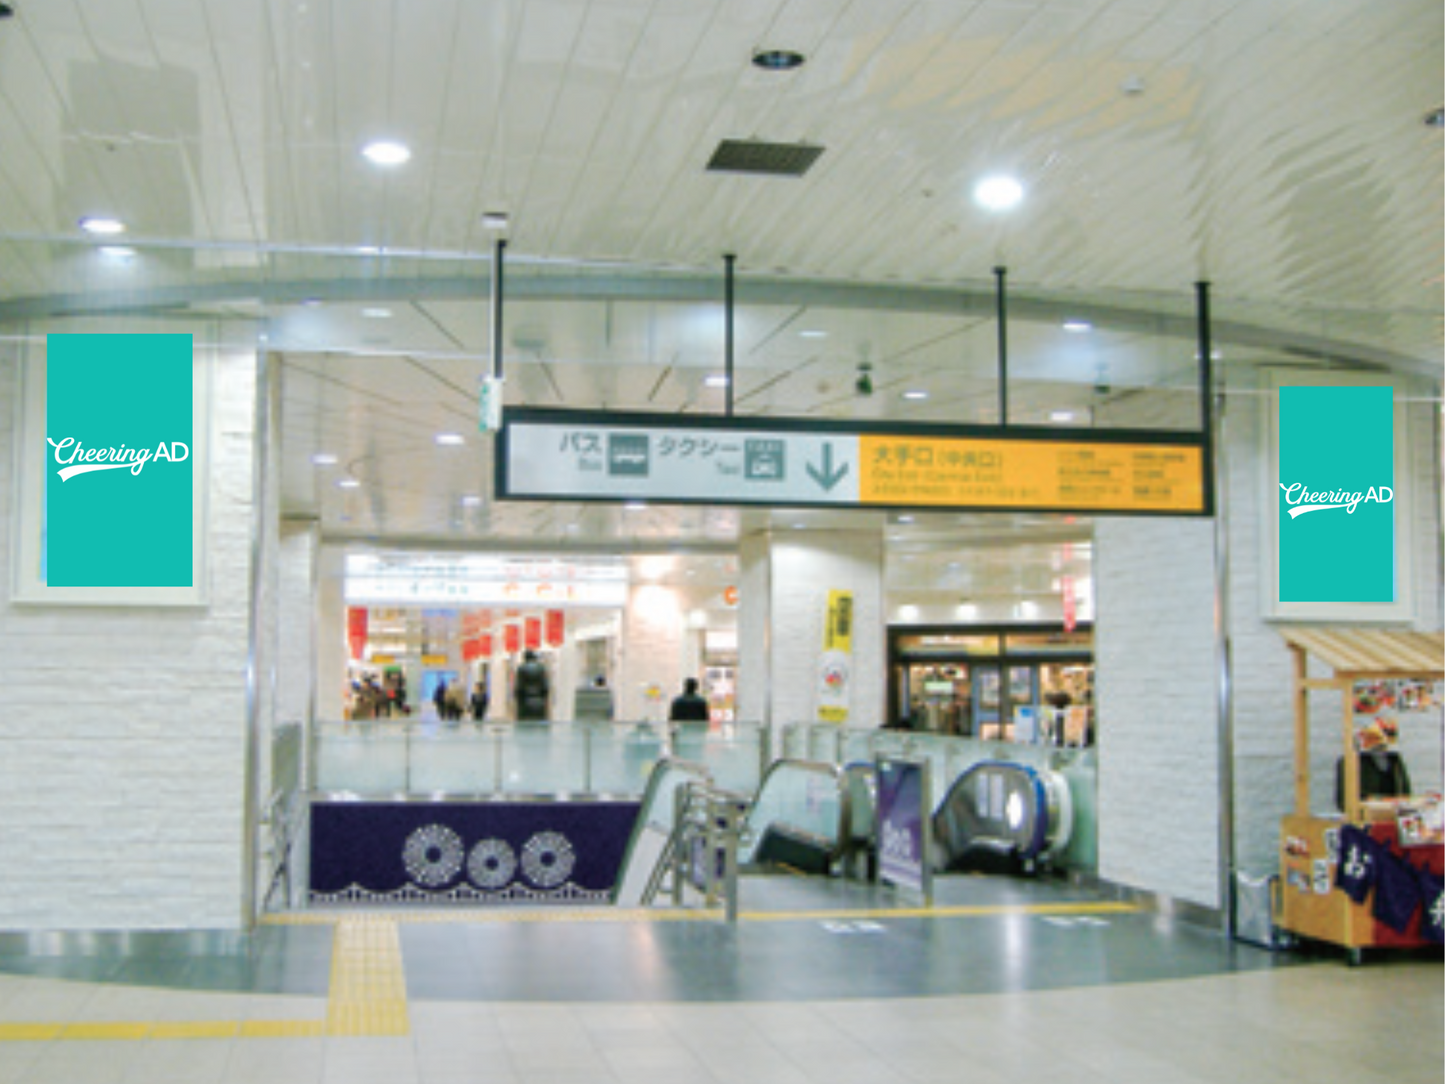 Ｊ･ＡＤビジョン 長岡駅